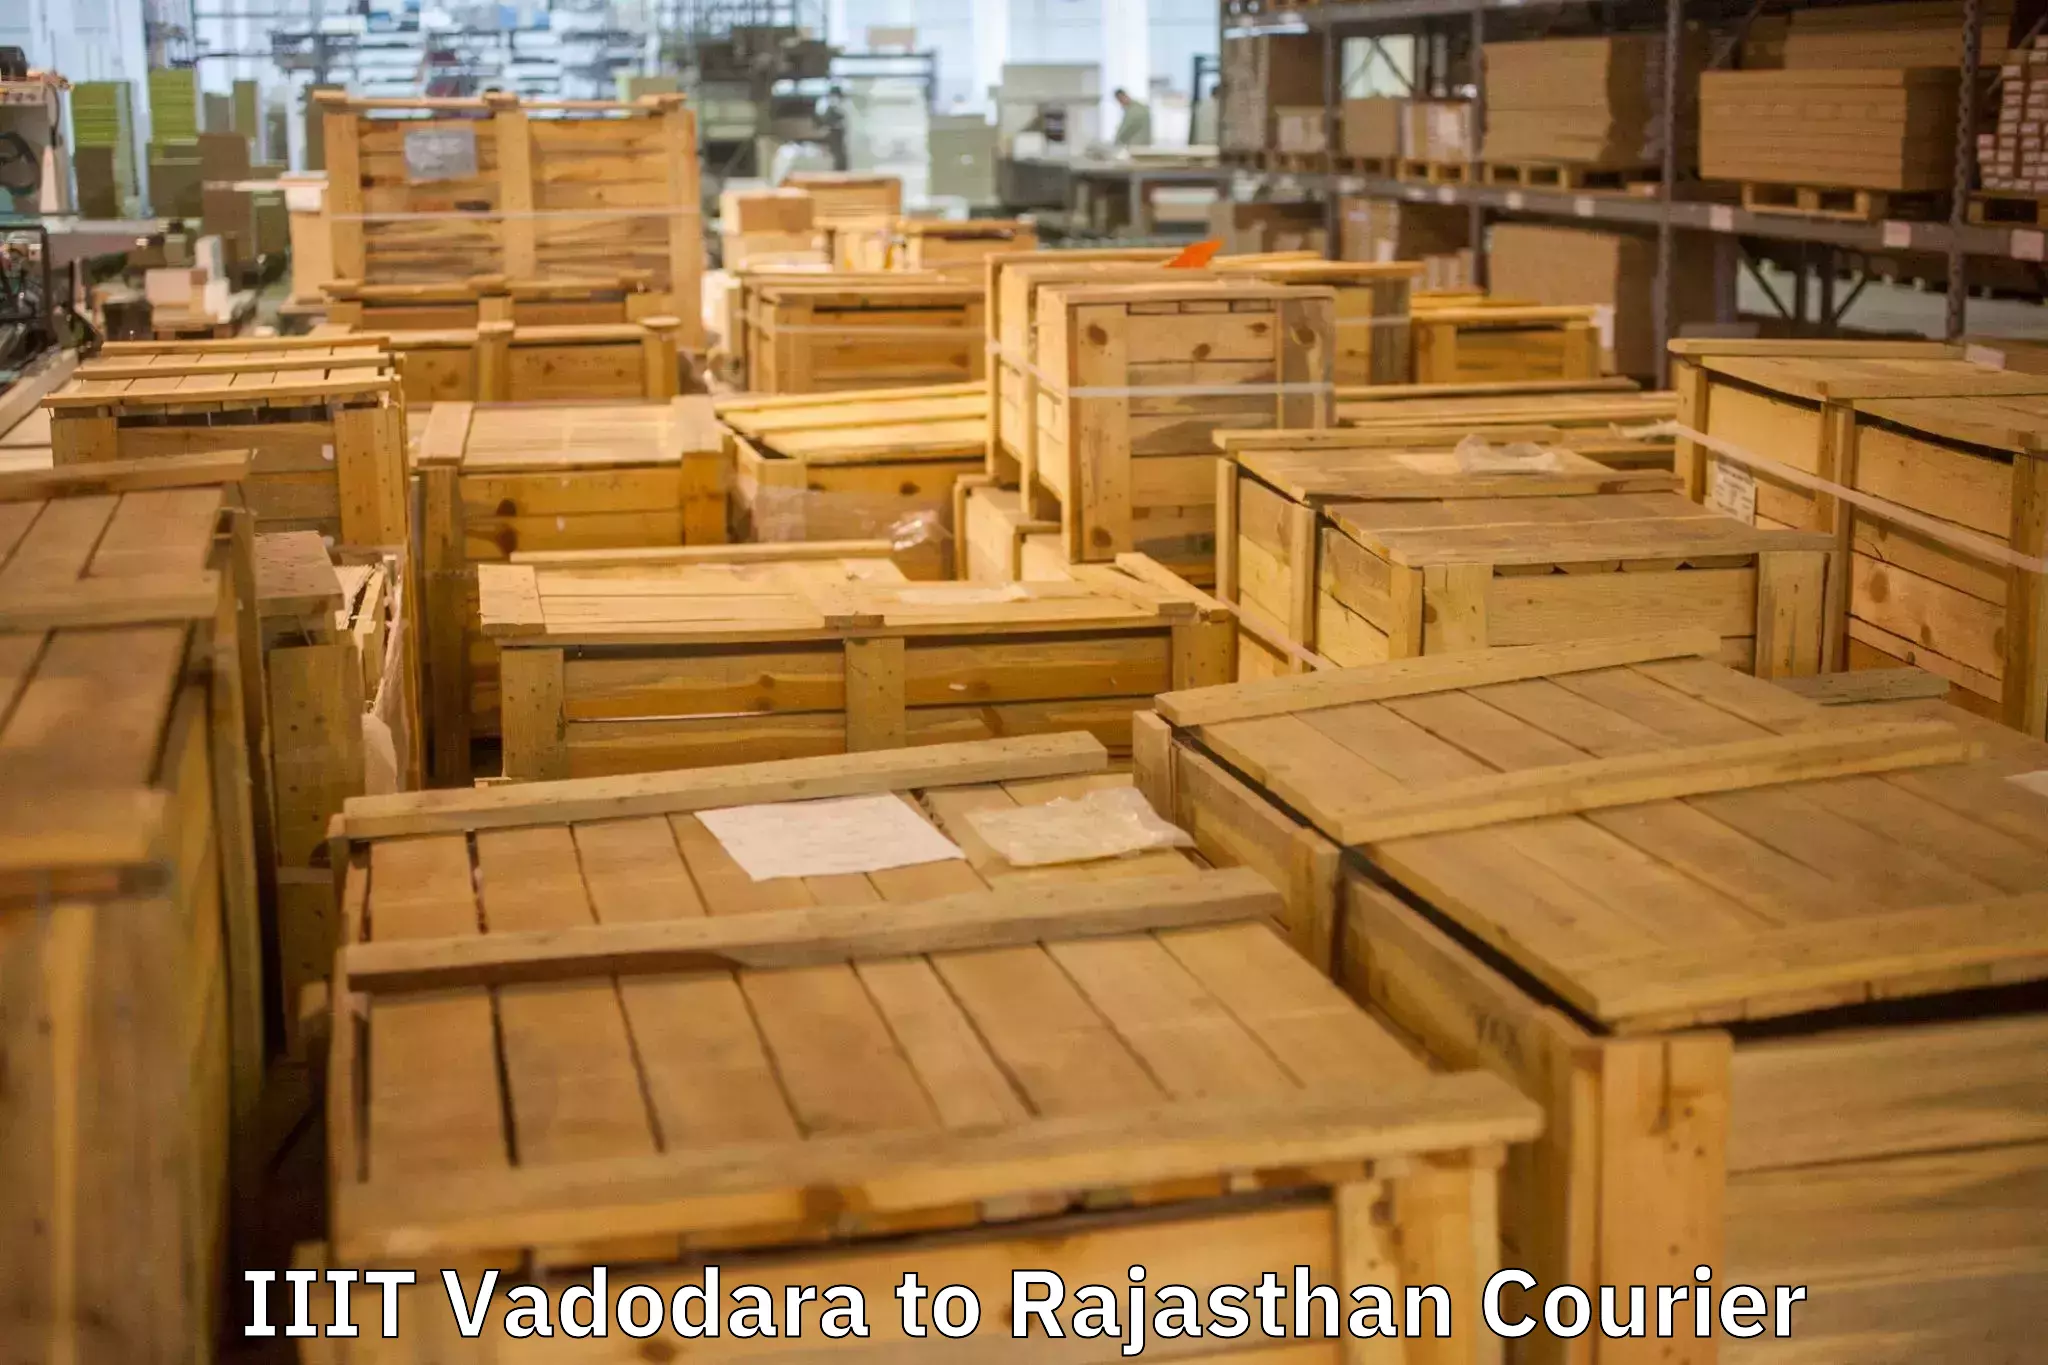 Customized furniture moving IIIT Vadodara to Udaipur